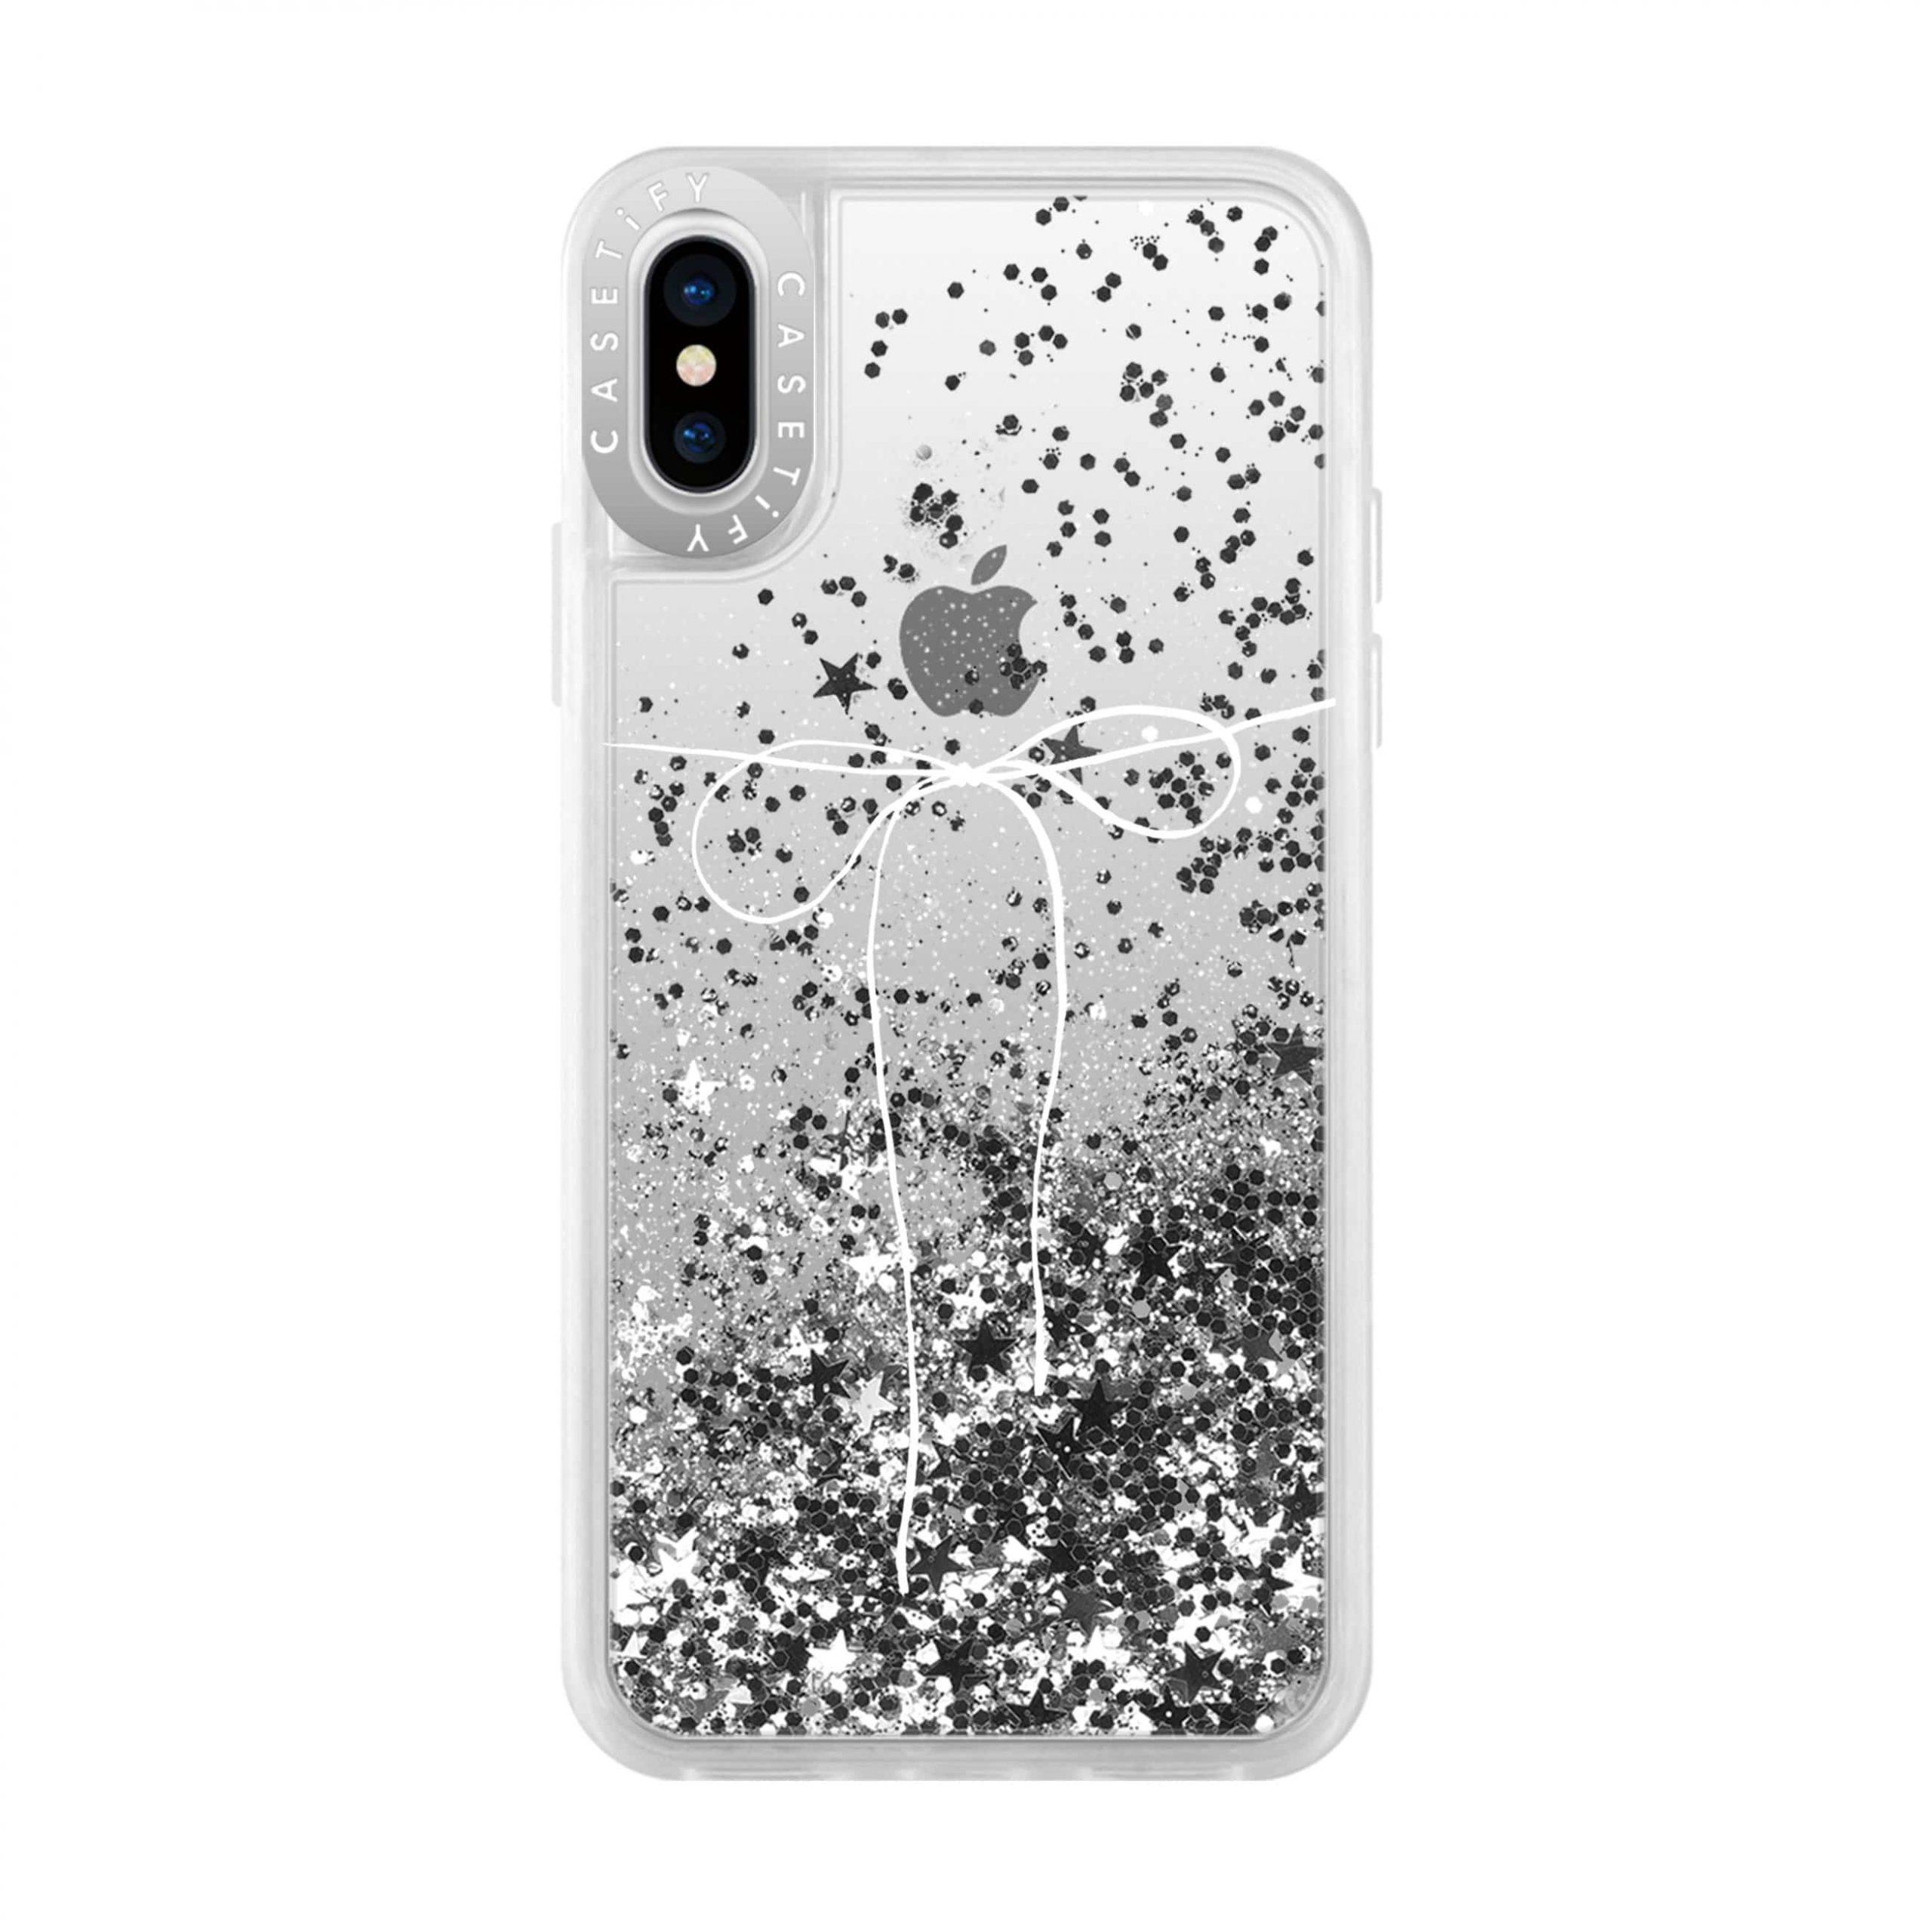 كفر حماية آيفون CASETIFY Glitter Case - Take A Bow for iPhone XS/X